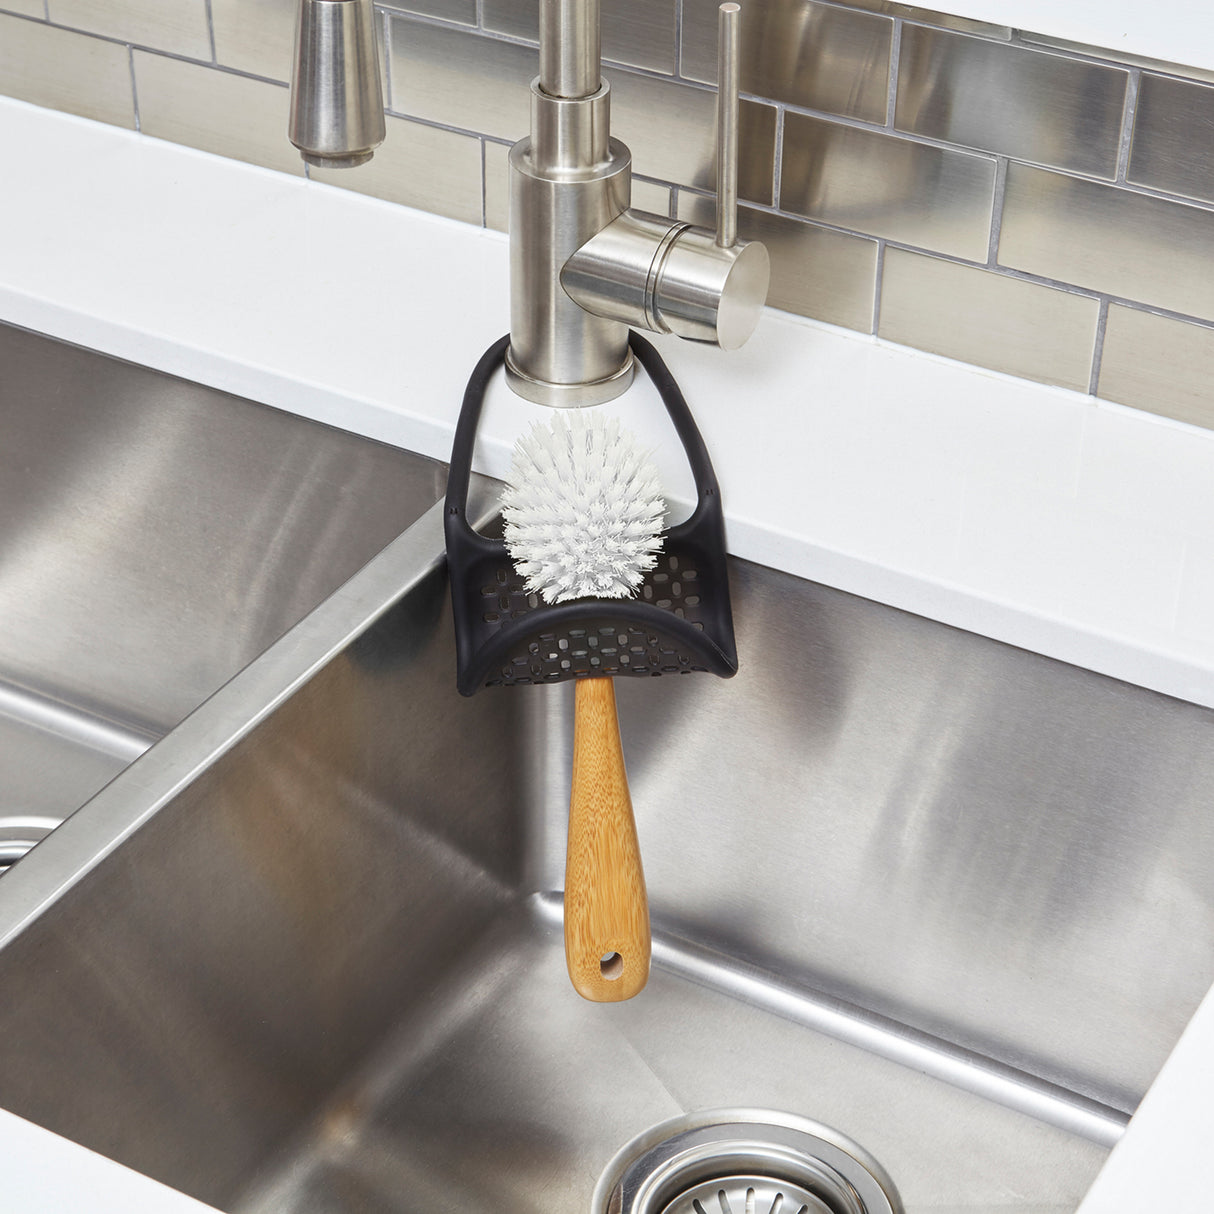 Kitchen Sink Sponge Holder Faucet Caddy - Silicone Dish Sponge Holder for  Kitchen Sink Caddy Sponge Holder Sink Faucet - Kitchen Organizers and